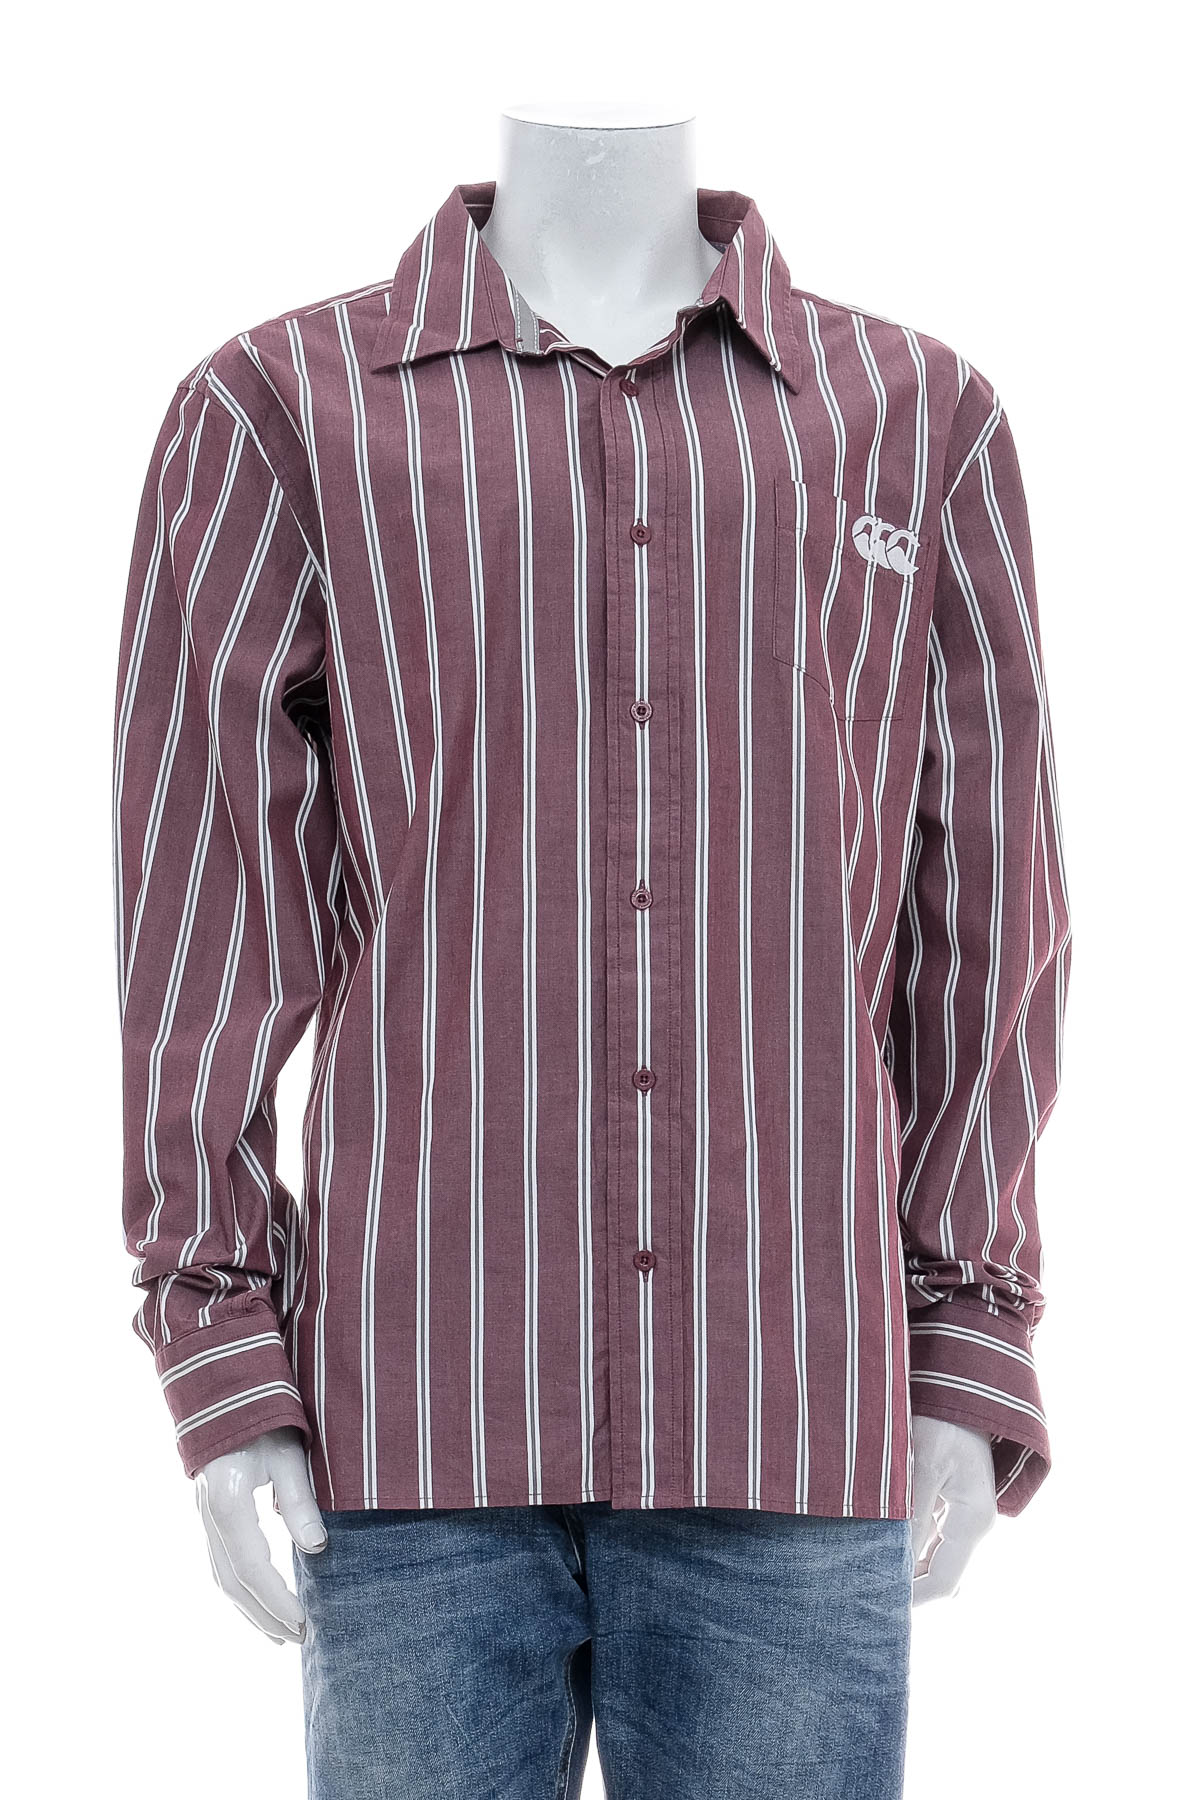 Ανδρικό πουκάμισο - Canterbury - 0